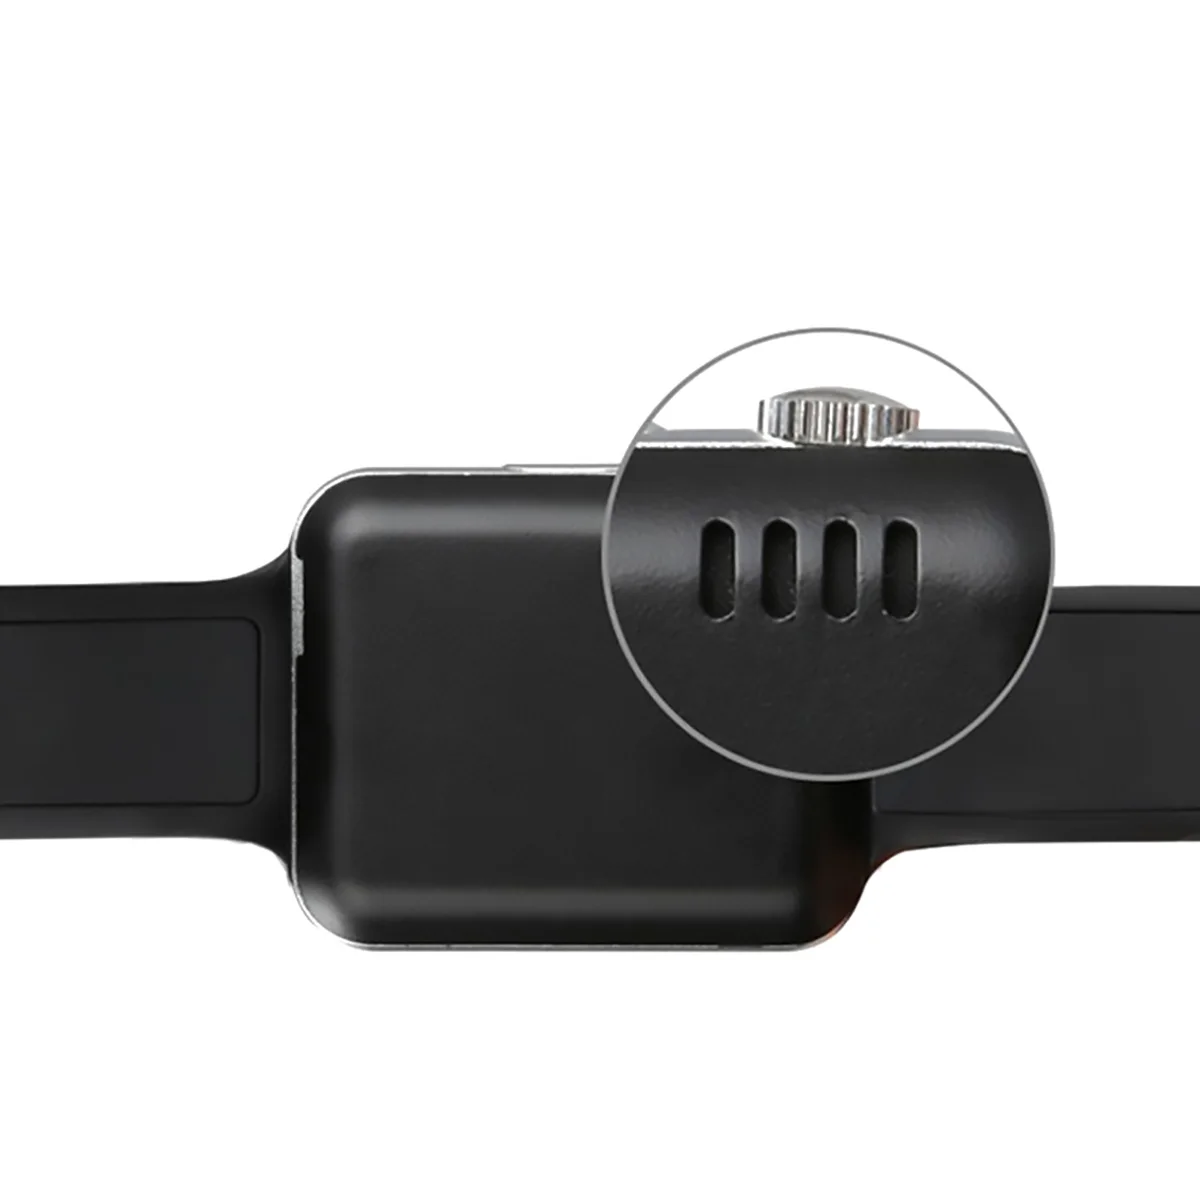 A1 Bluetooth Смарт часы фитнес gps часы Поддержка 2G SIM TF камера Bluetooth часы для IPhone huawei и других смартфонов